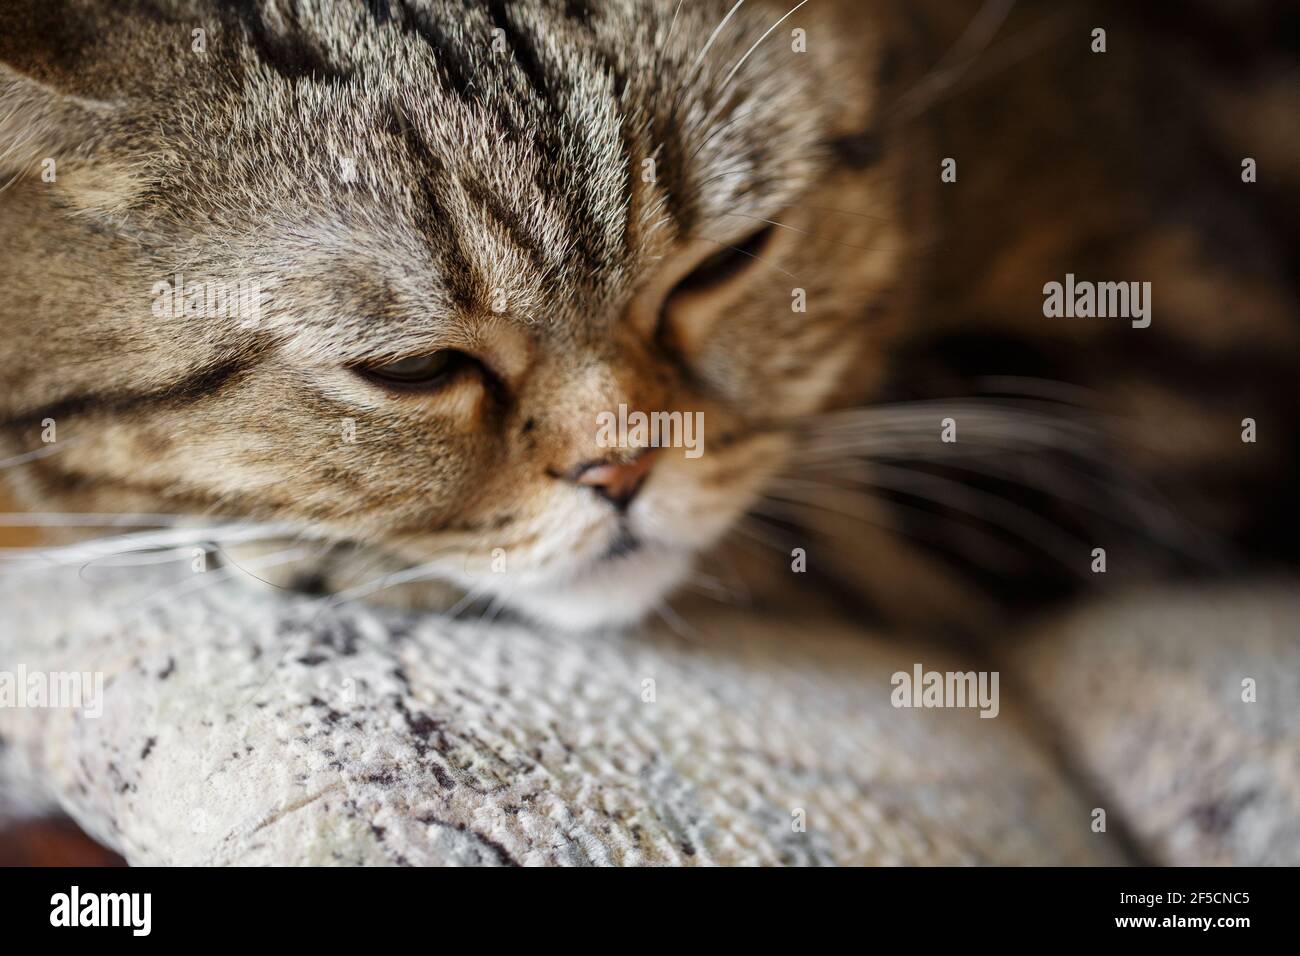 Hübsch schlafen schottisch gerade braun tabby Katze Gesicht Nahaufnahme auf Sofa. Entspannte Katze während des Tages. Haustier. Stockfoto